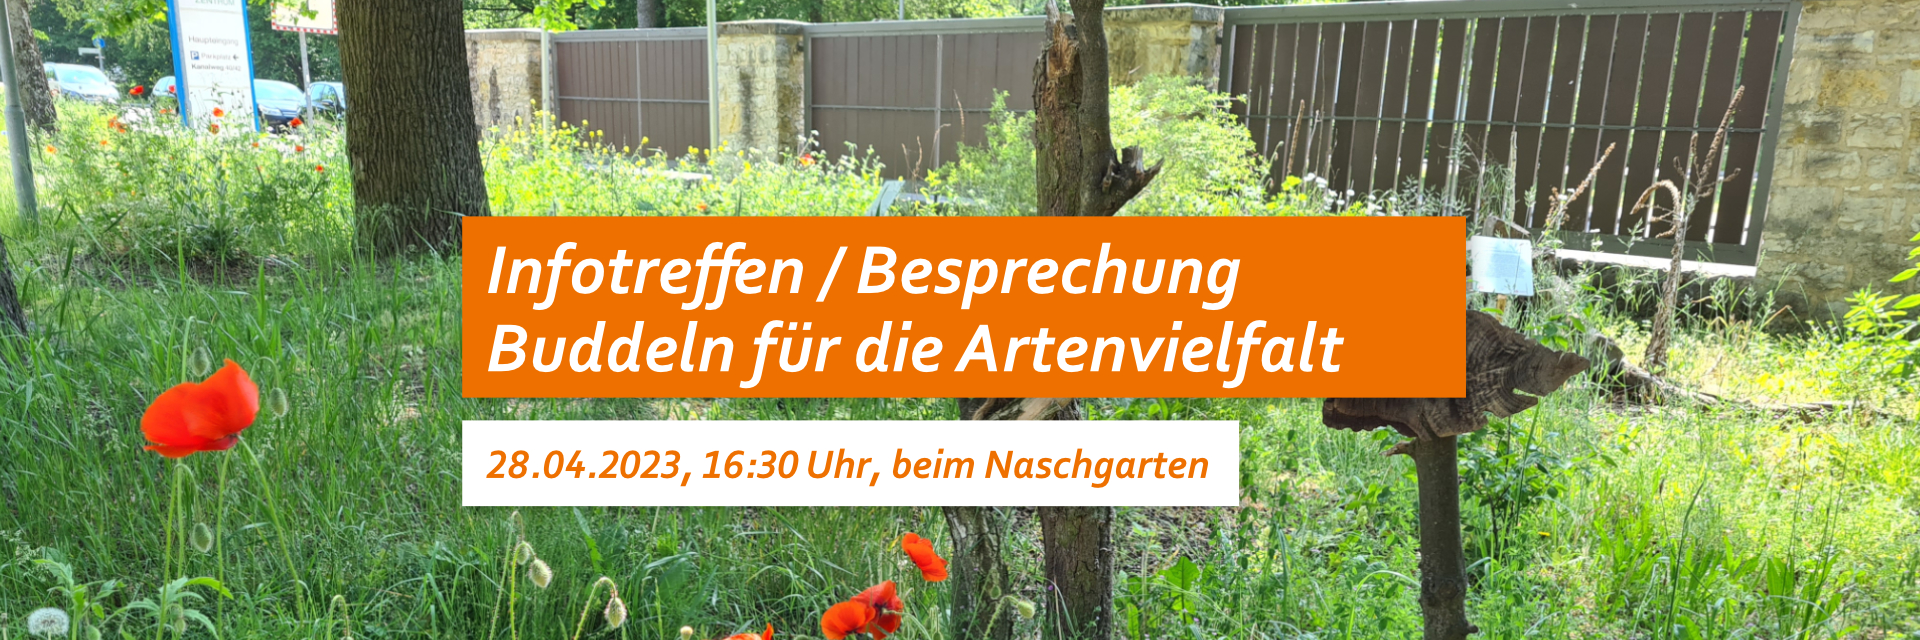 Wiese mit Klatschmohn und Totholz. Text: Infotreffen / Besprechung Buddeln für die Artenvielfalt. 28.04.23, 16:30 Uhr, beim Naschgarten